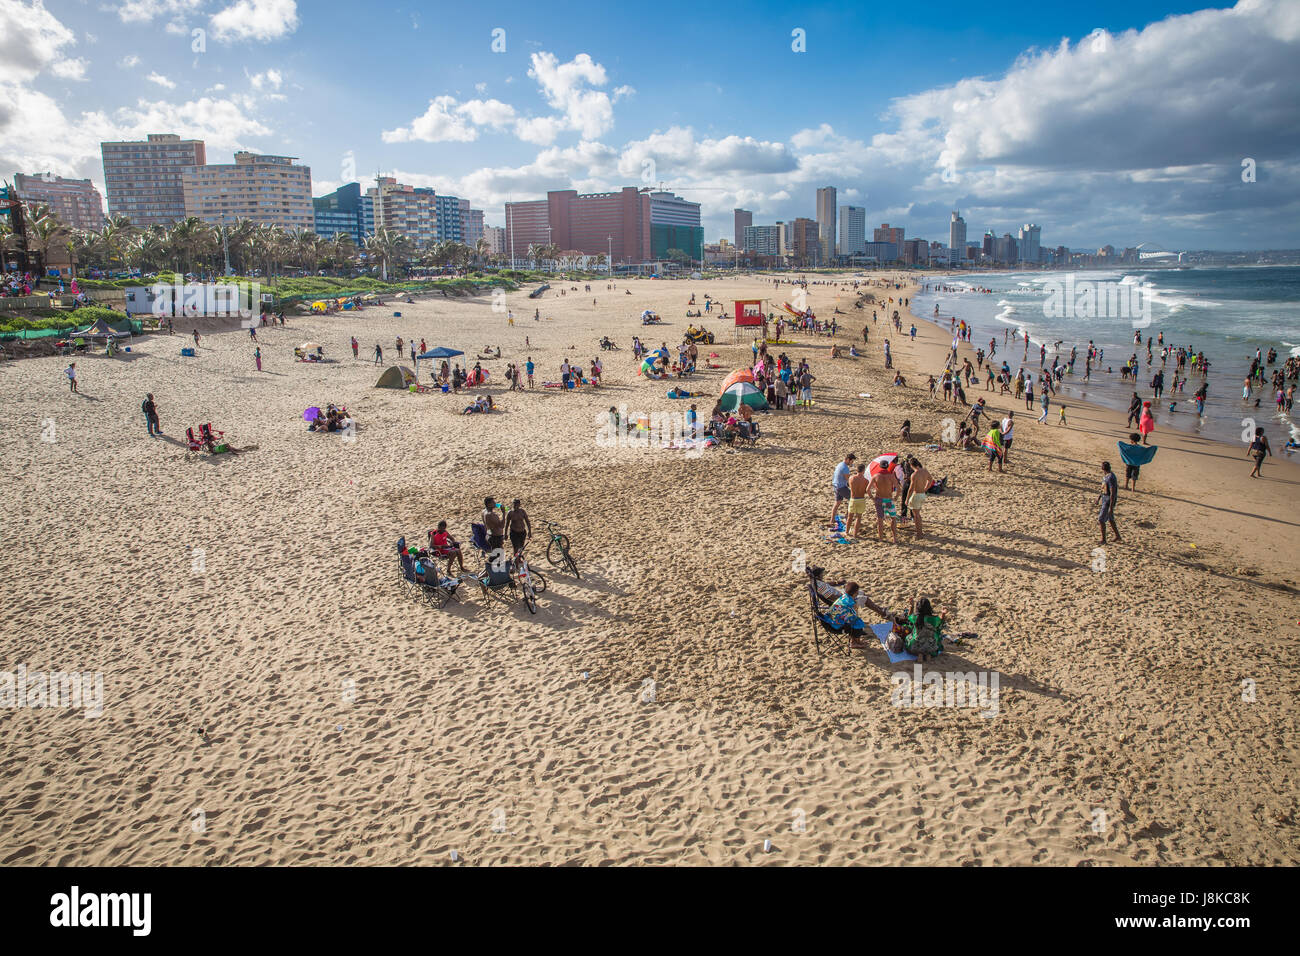 Durban, Südafrika - 16. Januar 2015, ein schöner Blick auf den Strand, wo Menschen mit den Wellen spielen Stockfoto